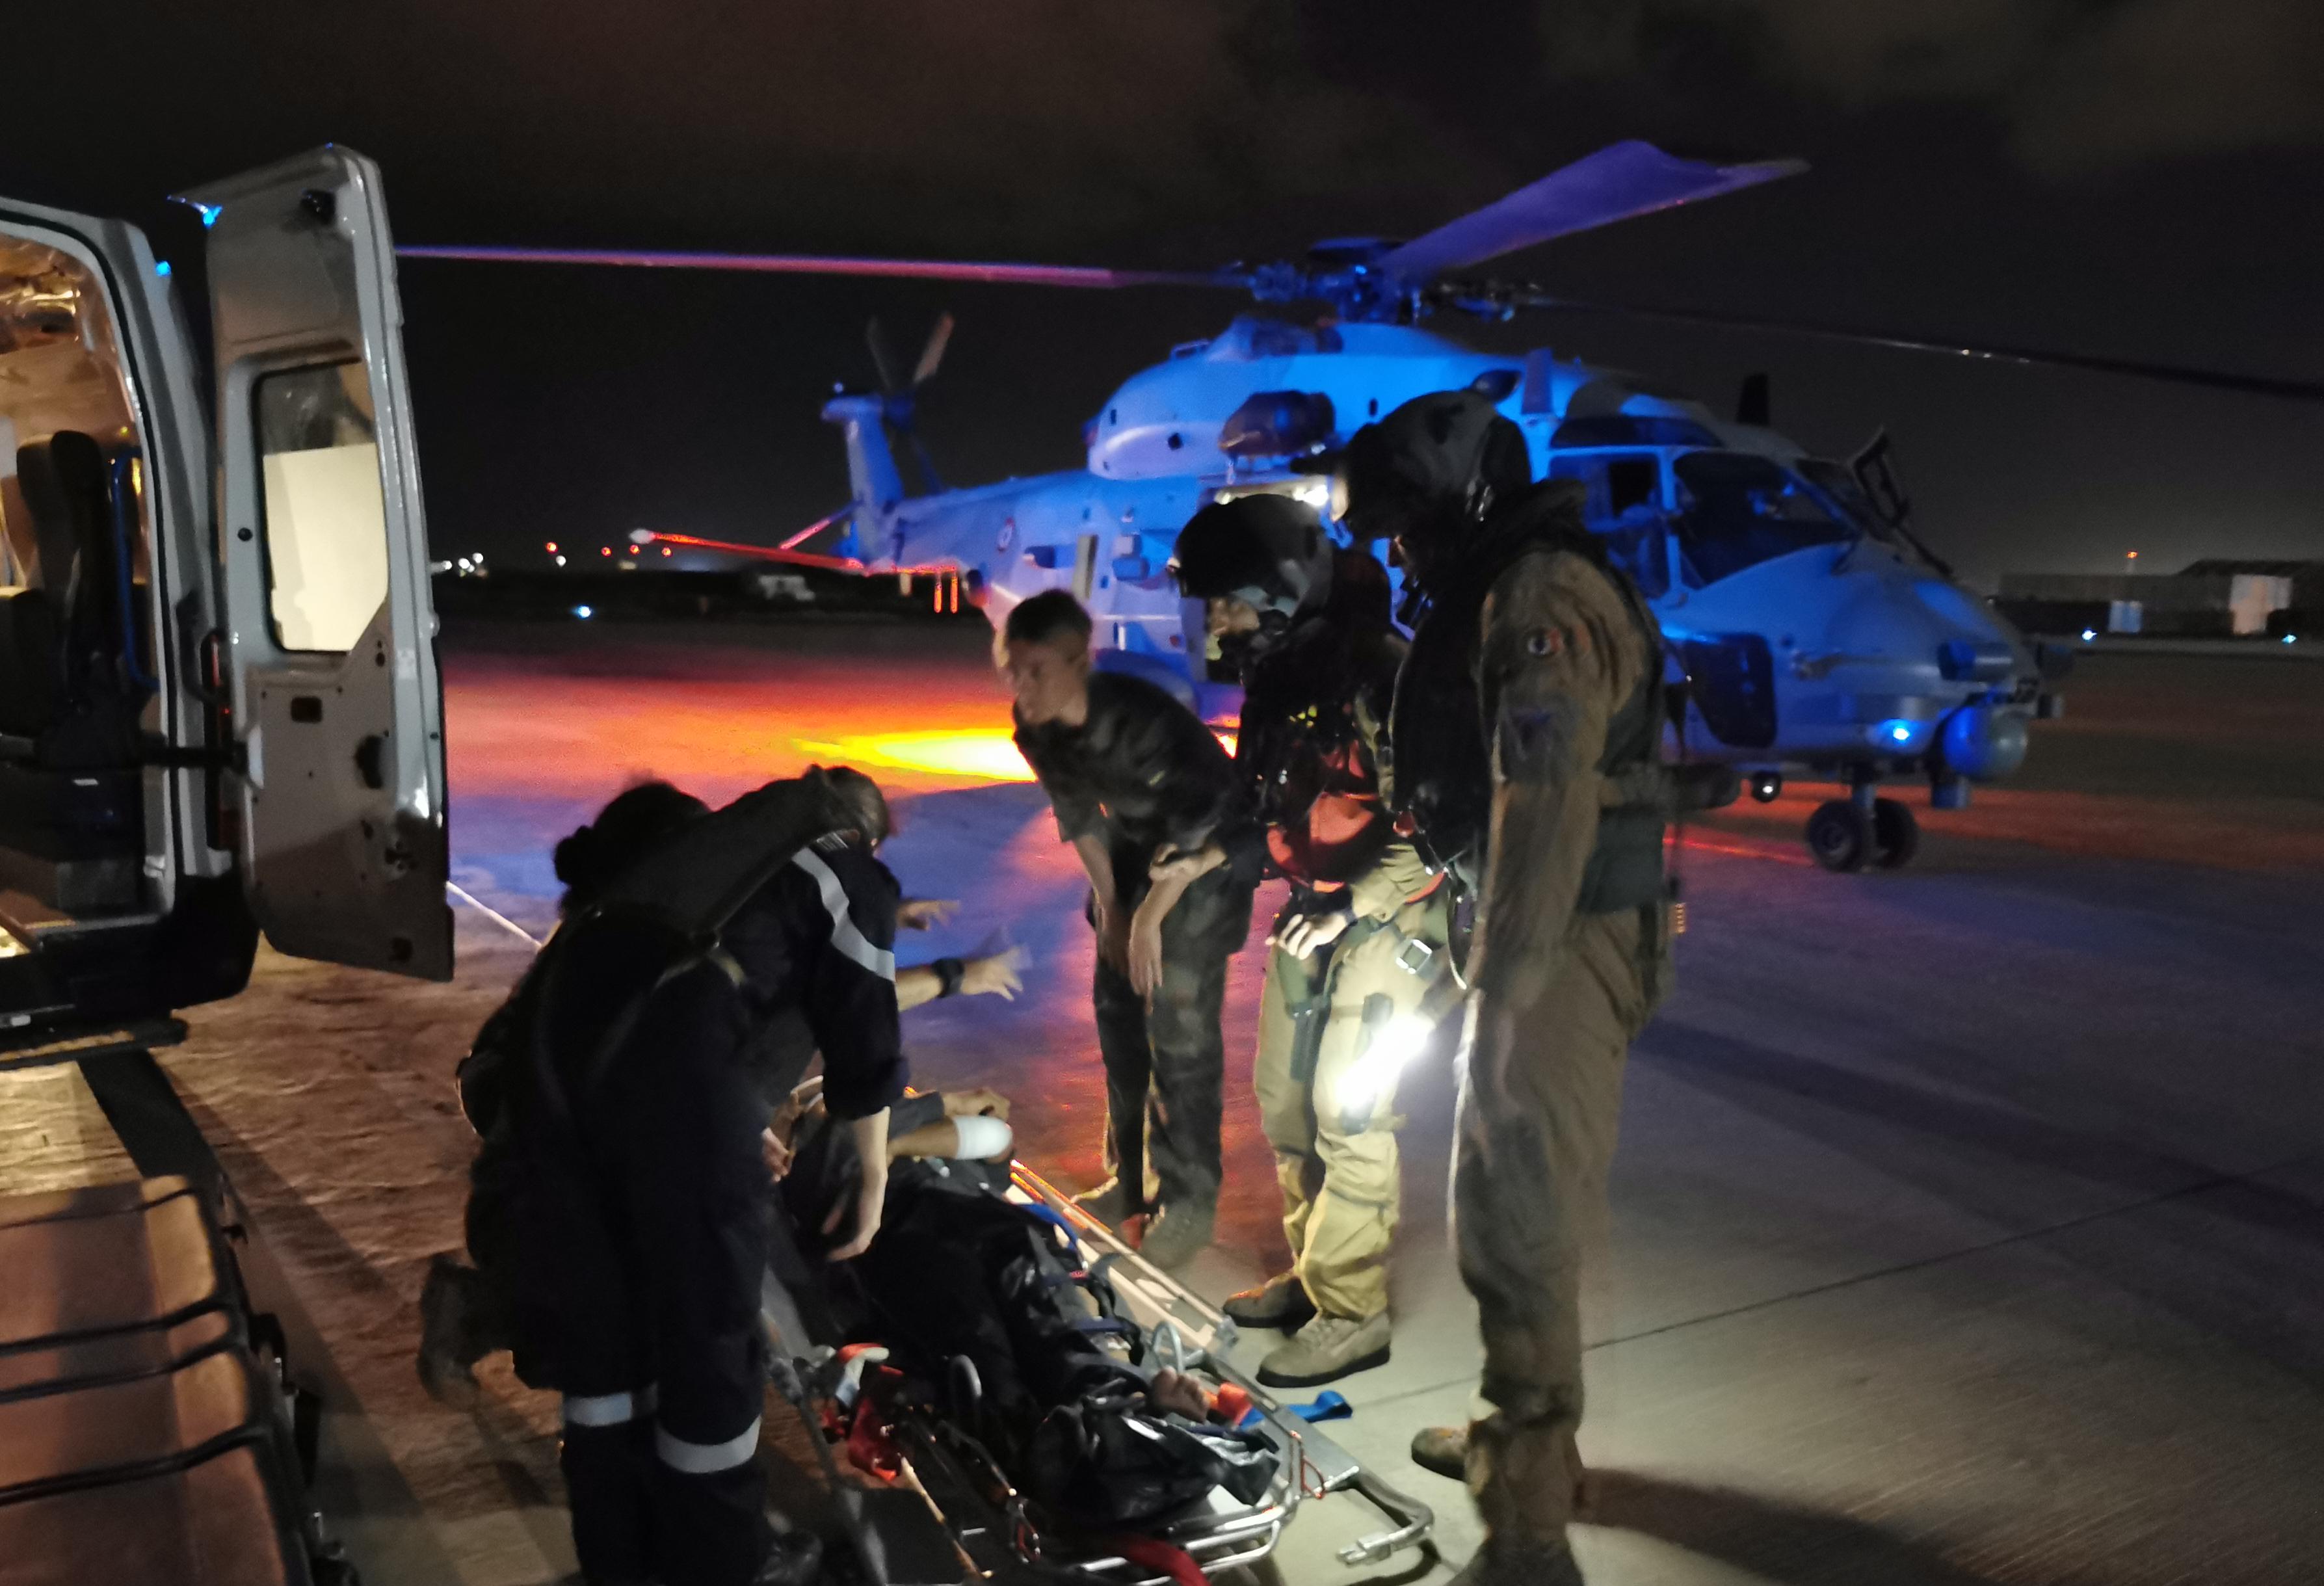  ANTARES – Le groupe aéronaval porte assistance à un marin au large de Djibouti